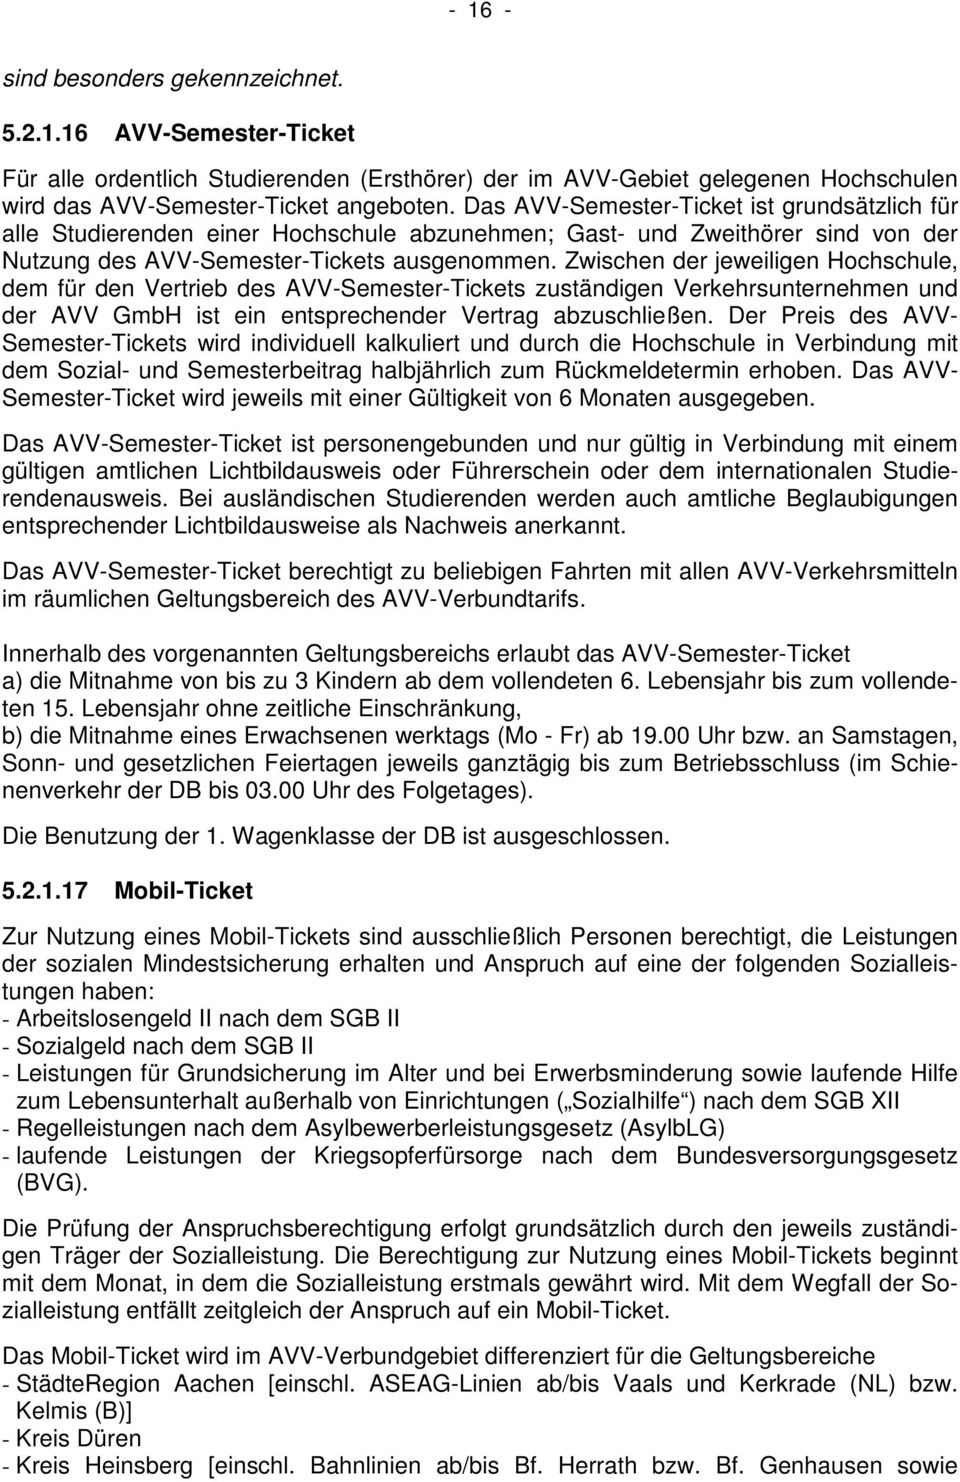 Zwischen der jeweiligen Hochschule, dem für den Vertrieb des AVV-Semester-Tickets zuständigen Verkehrsunternehmen und der AVV GmbH ist ein entsprechender Vertrag abzuschließen.